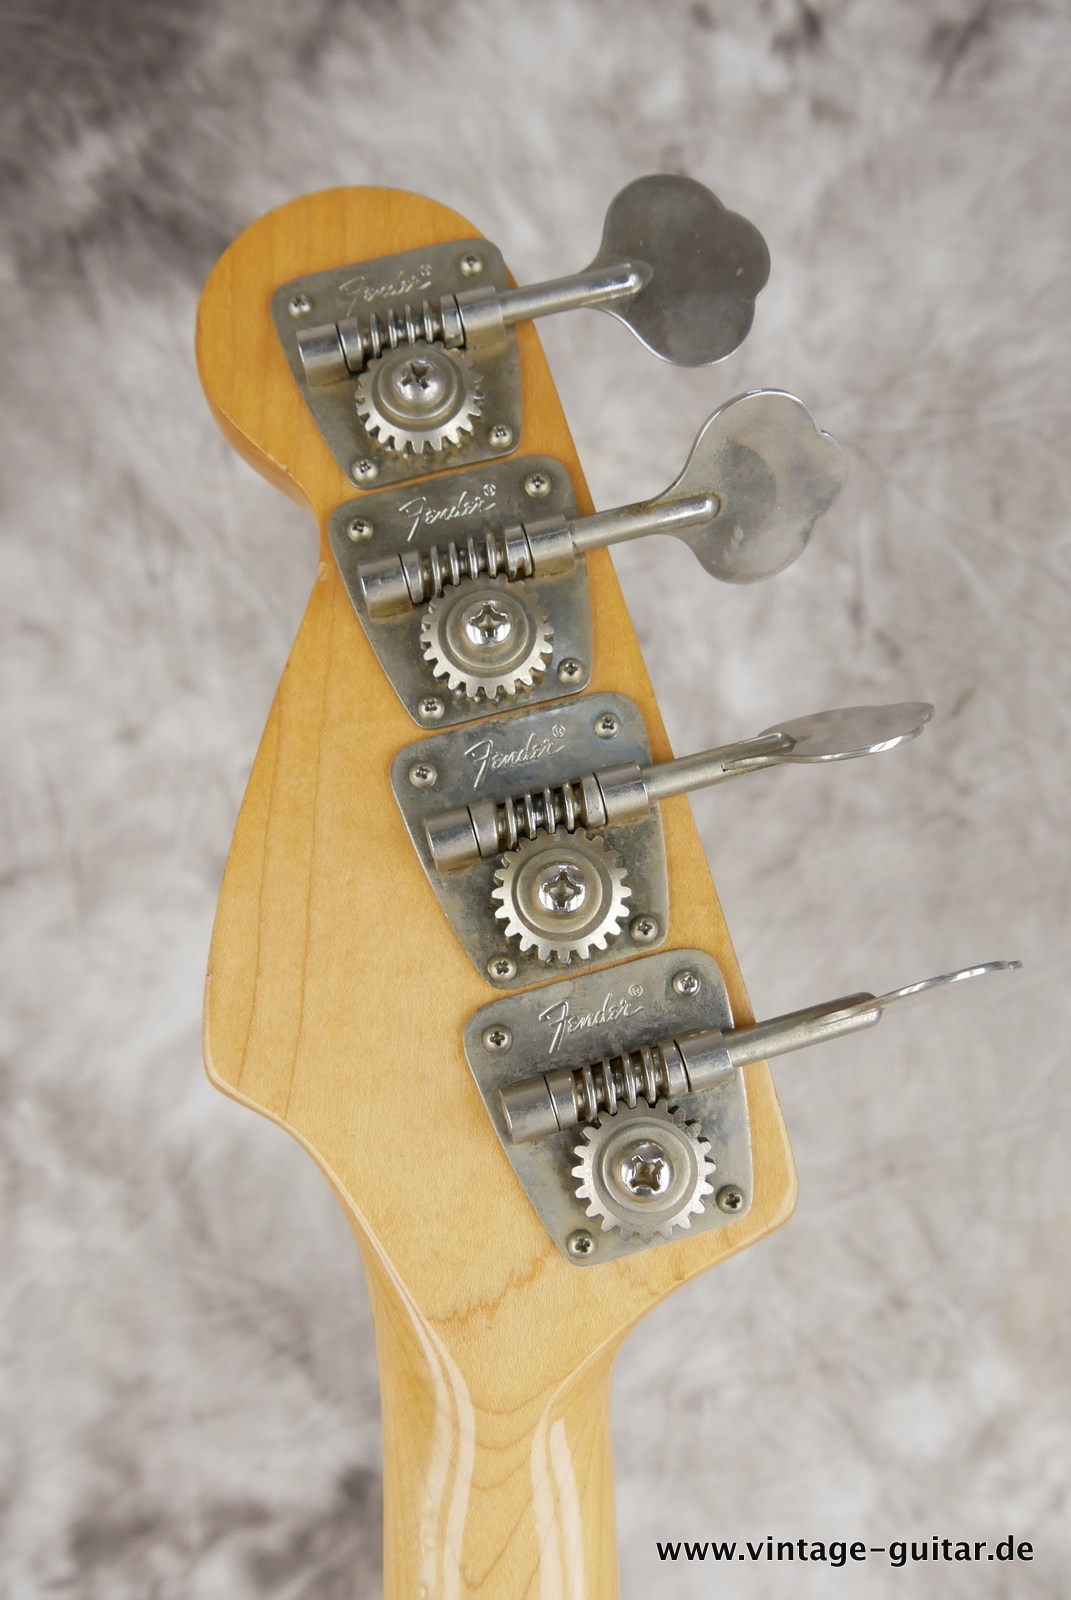 Fender-Precision-Bass-1973-sunburst-010.JPG